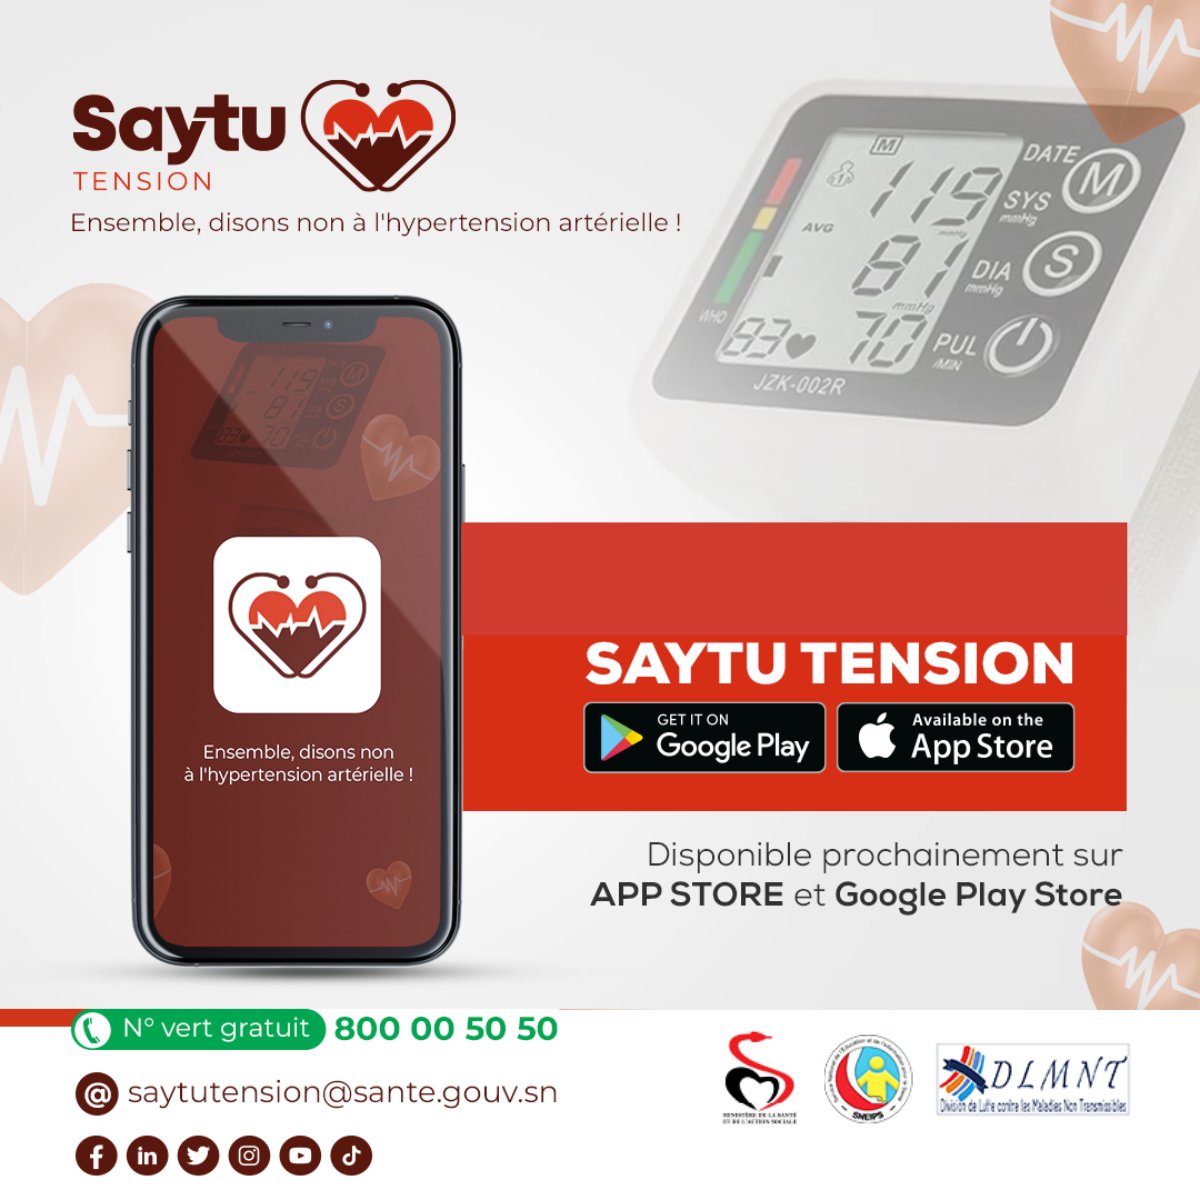 Votre application mobile Saytu Tension sera disponible très prochainement ⏳.
Saytu Tension est une solution digitale innovante pour la gestion de votre tension artérielle. 
#Kebetu #ApplicationMobile #HypertensionArterielle